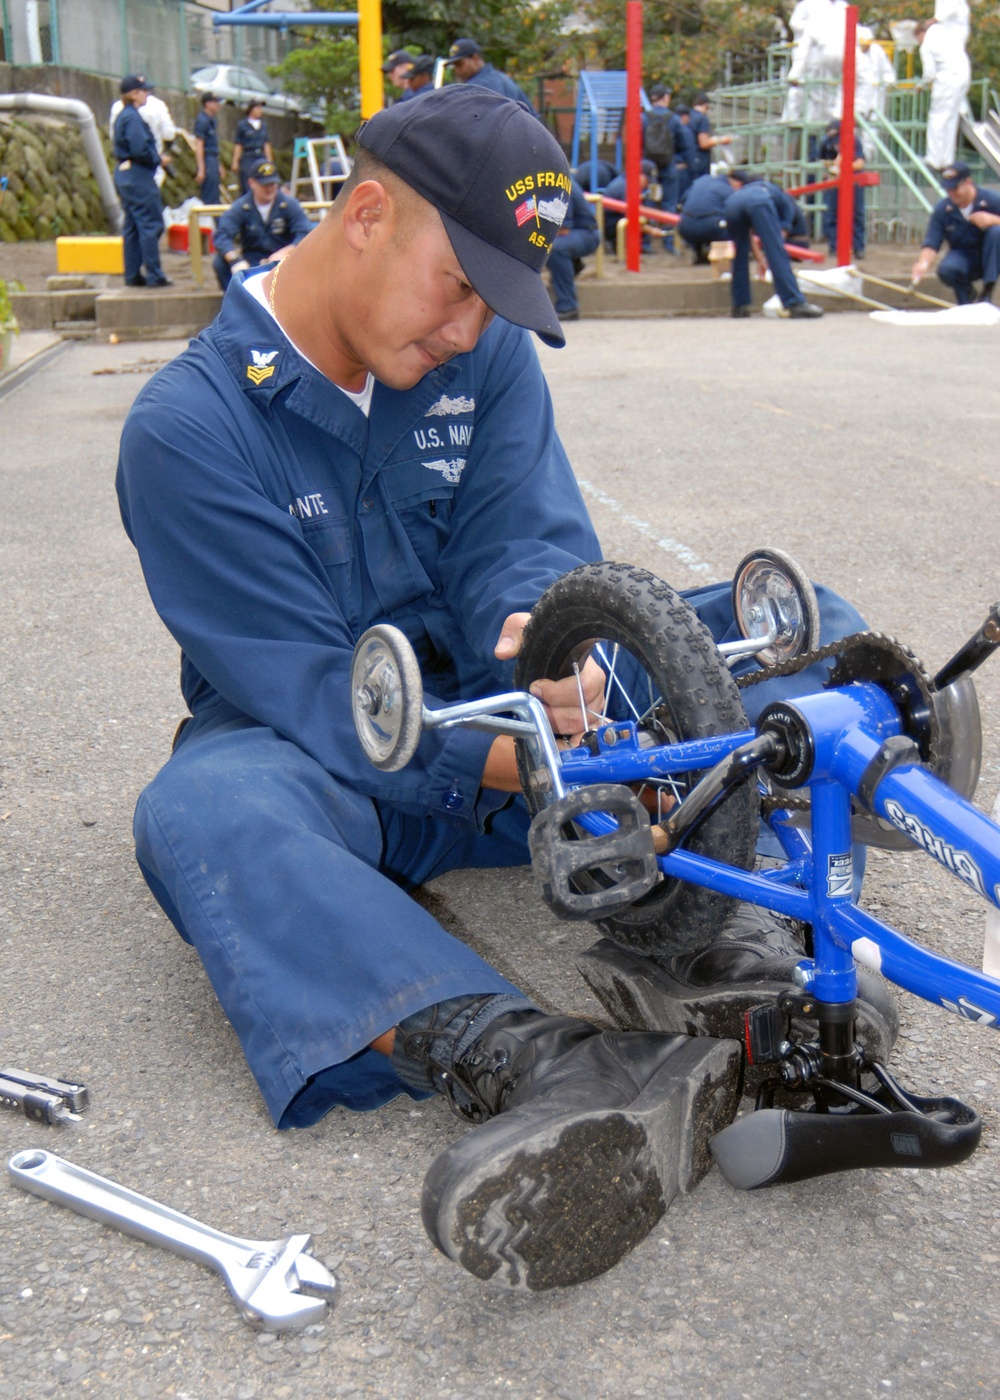 Petty Officer repairs bike